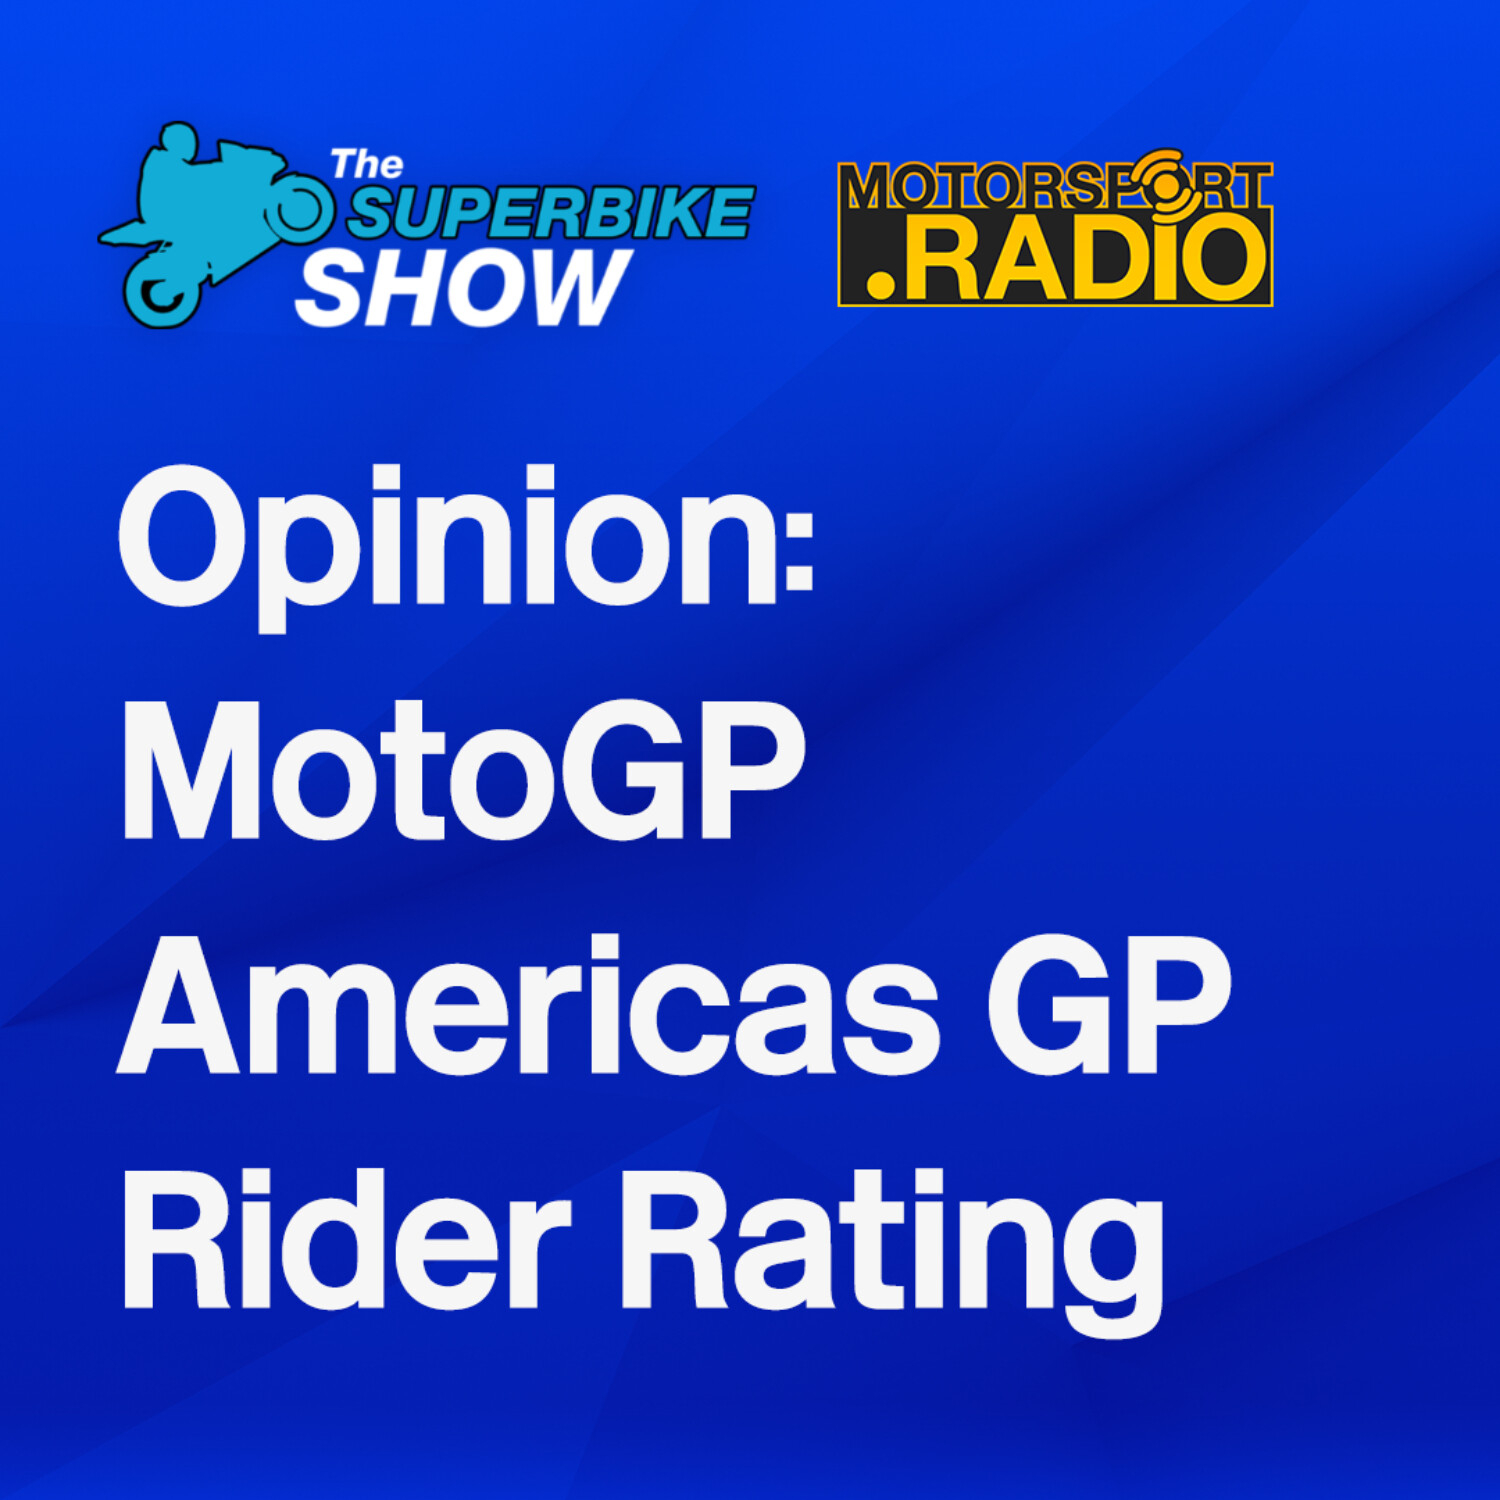 #MotoGP #AmericasGP Luke’s Rider Rating